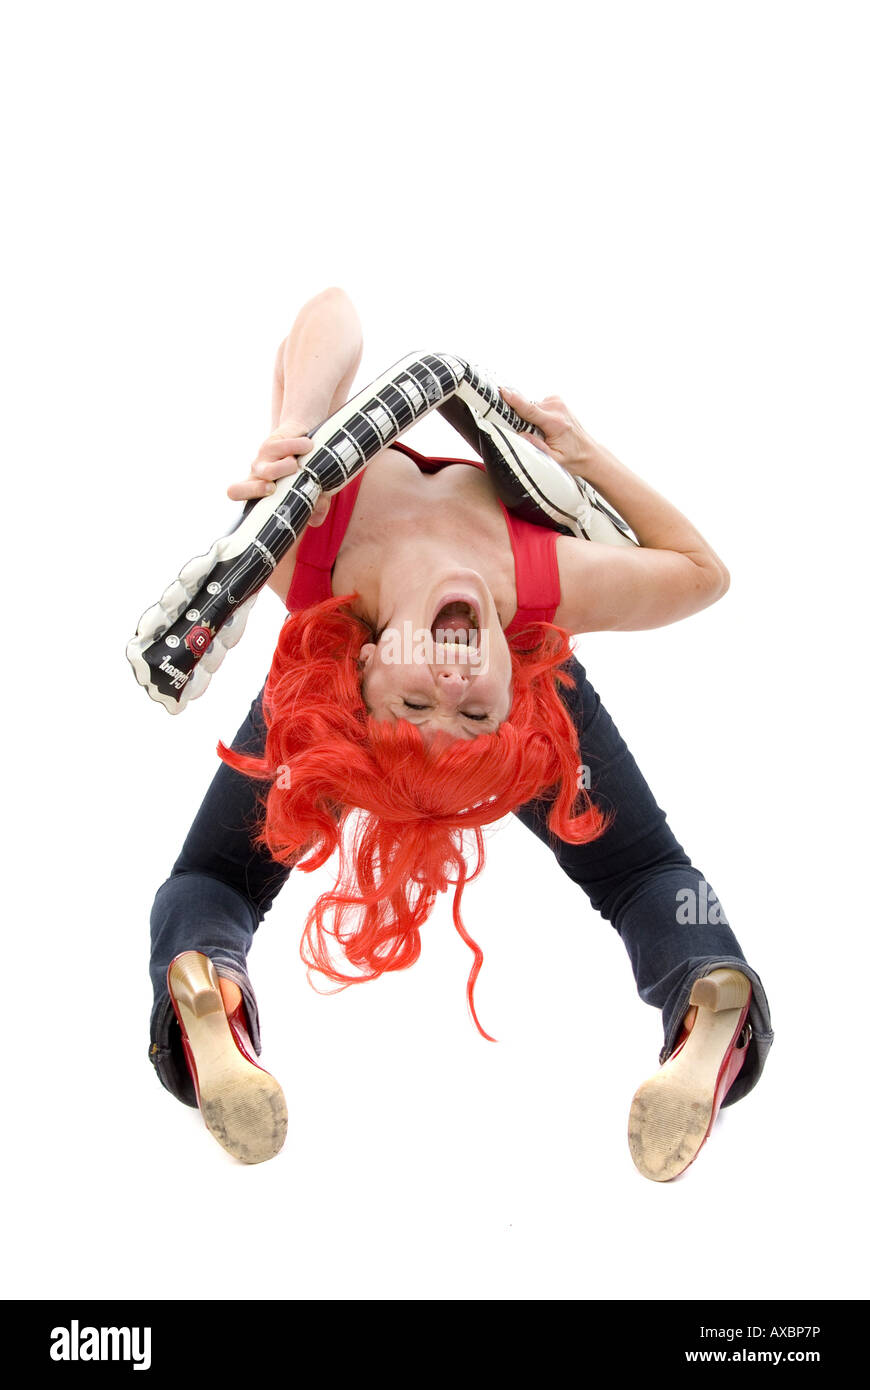 junge Frau mit einer roten Perücke, Luftgitarre zu spielen Stockfoto